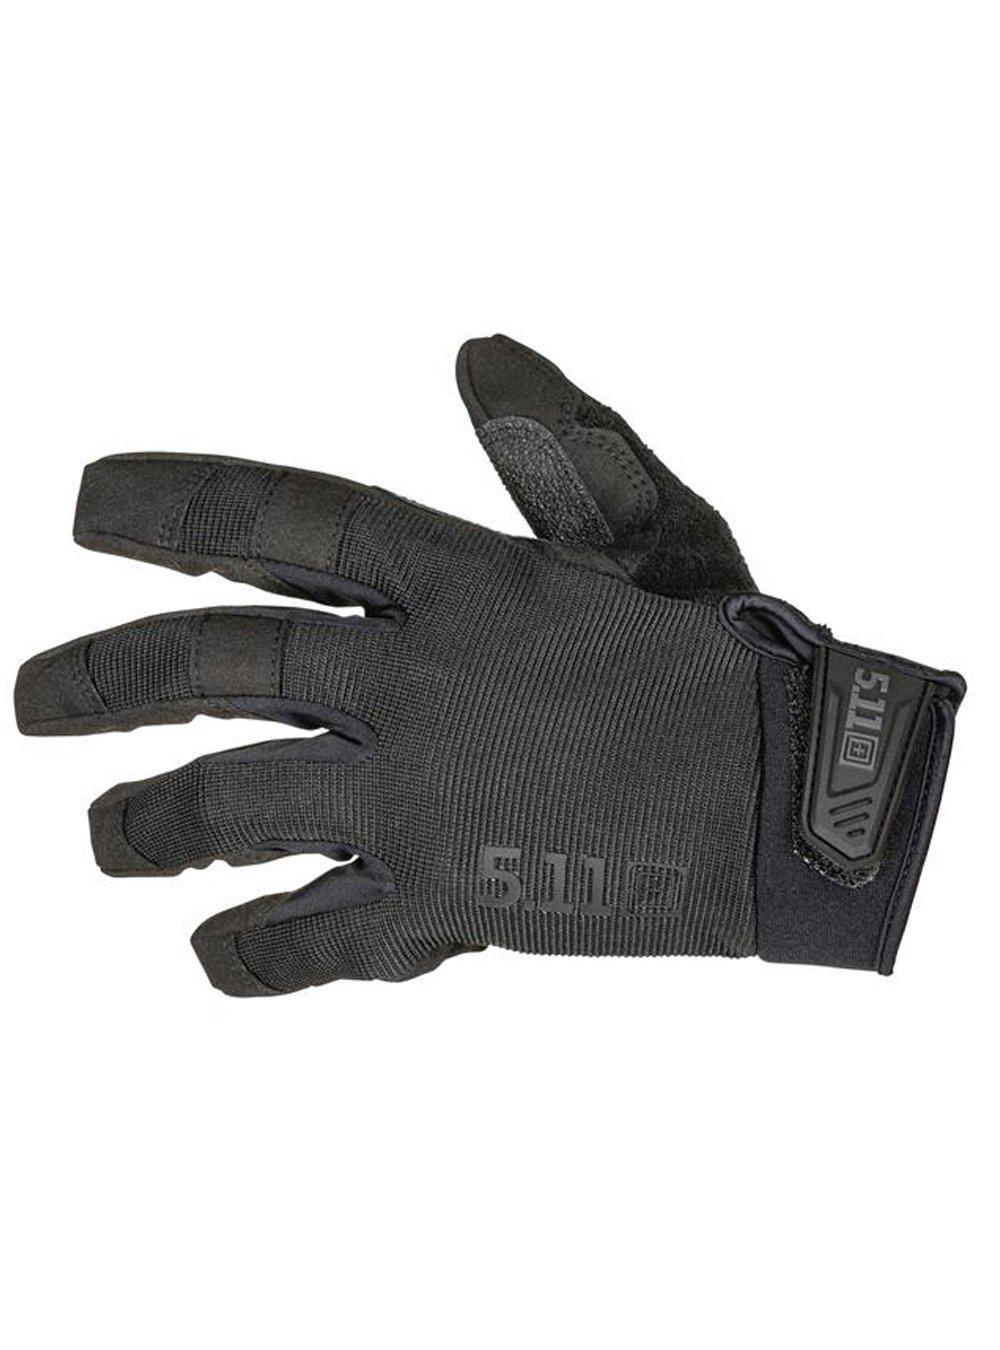 5.11 Tactical Tac A3 Gloves - TacSource